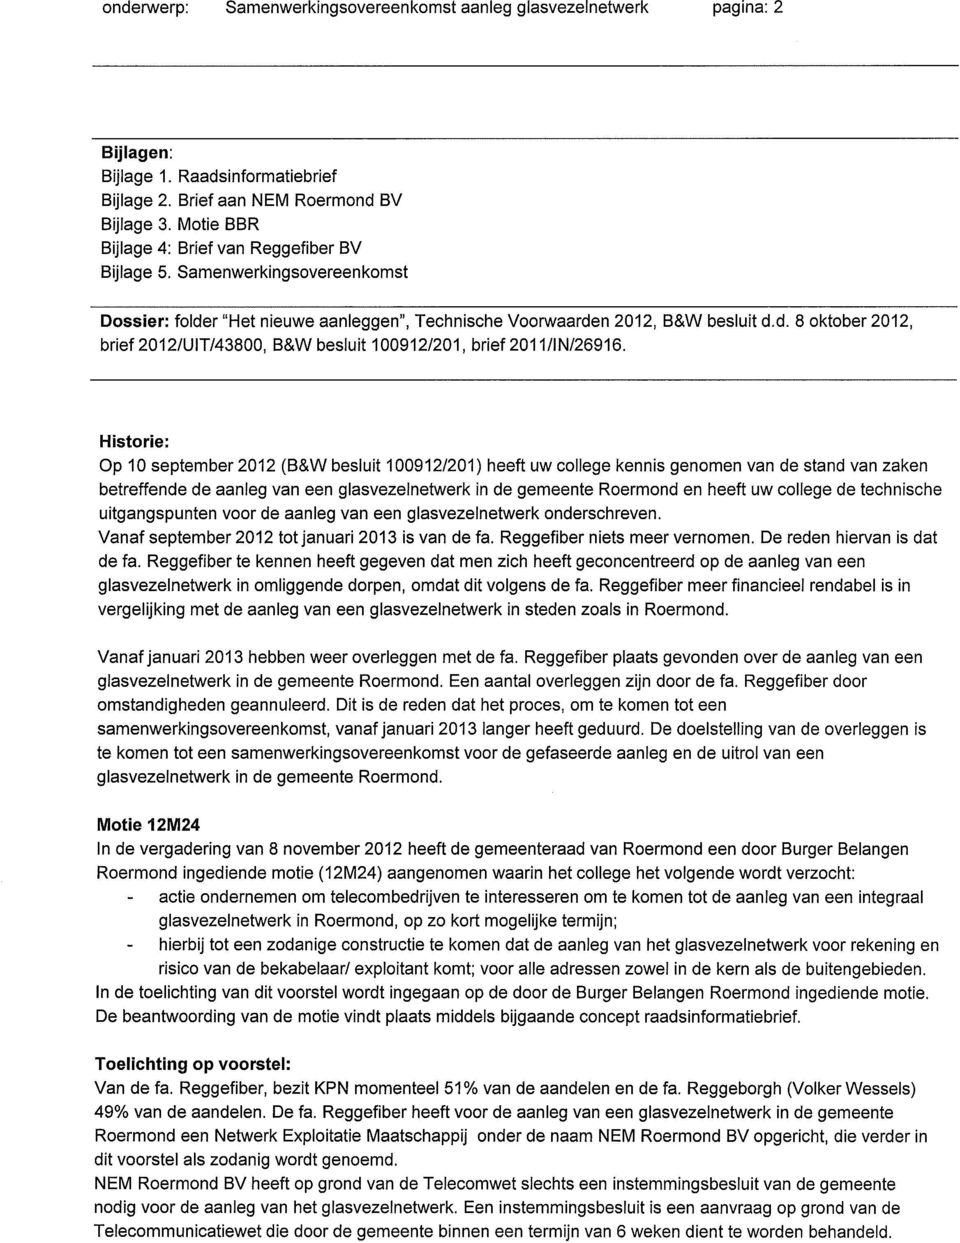 Historie: Op 10 september 2012 (B&W besluit 100912/201) heeft uw college kennis genomen van de stand van zaken betreffende de aanleg van een glasvezelnetwerk in de gemeente Roermond en heeft uw